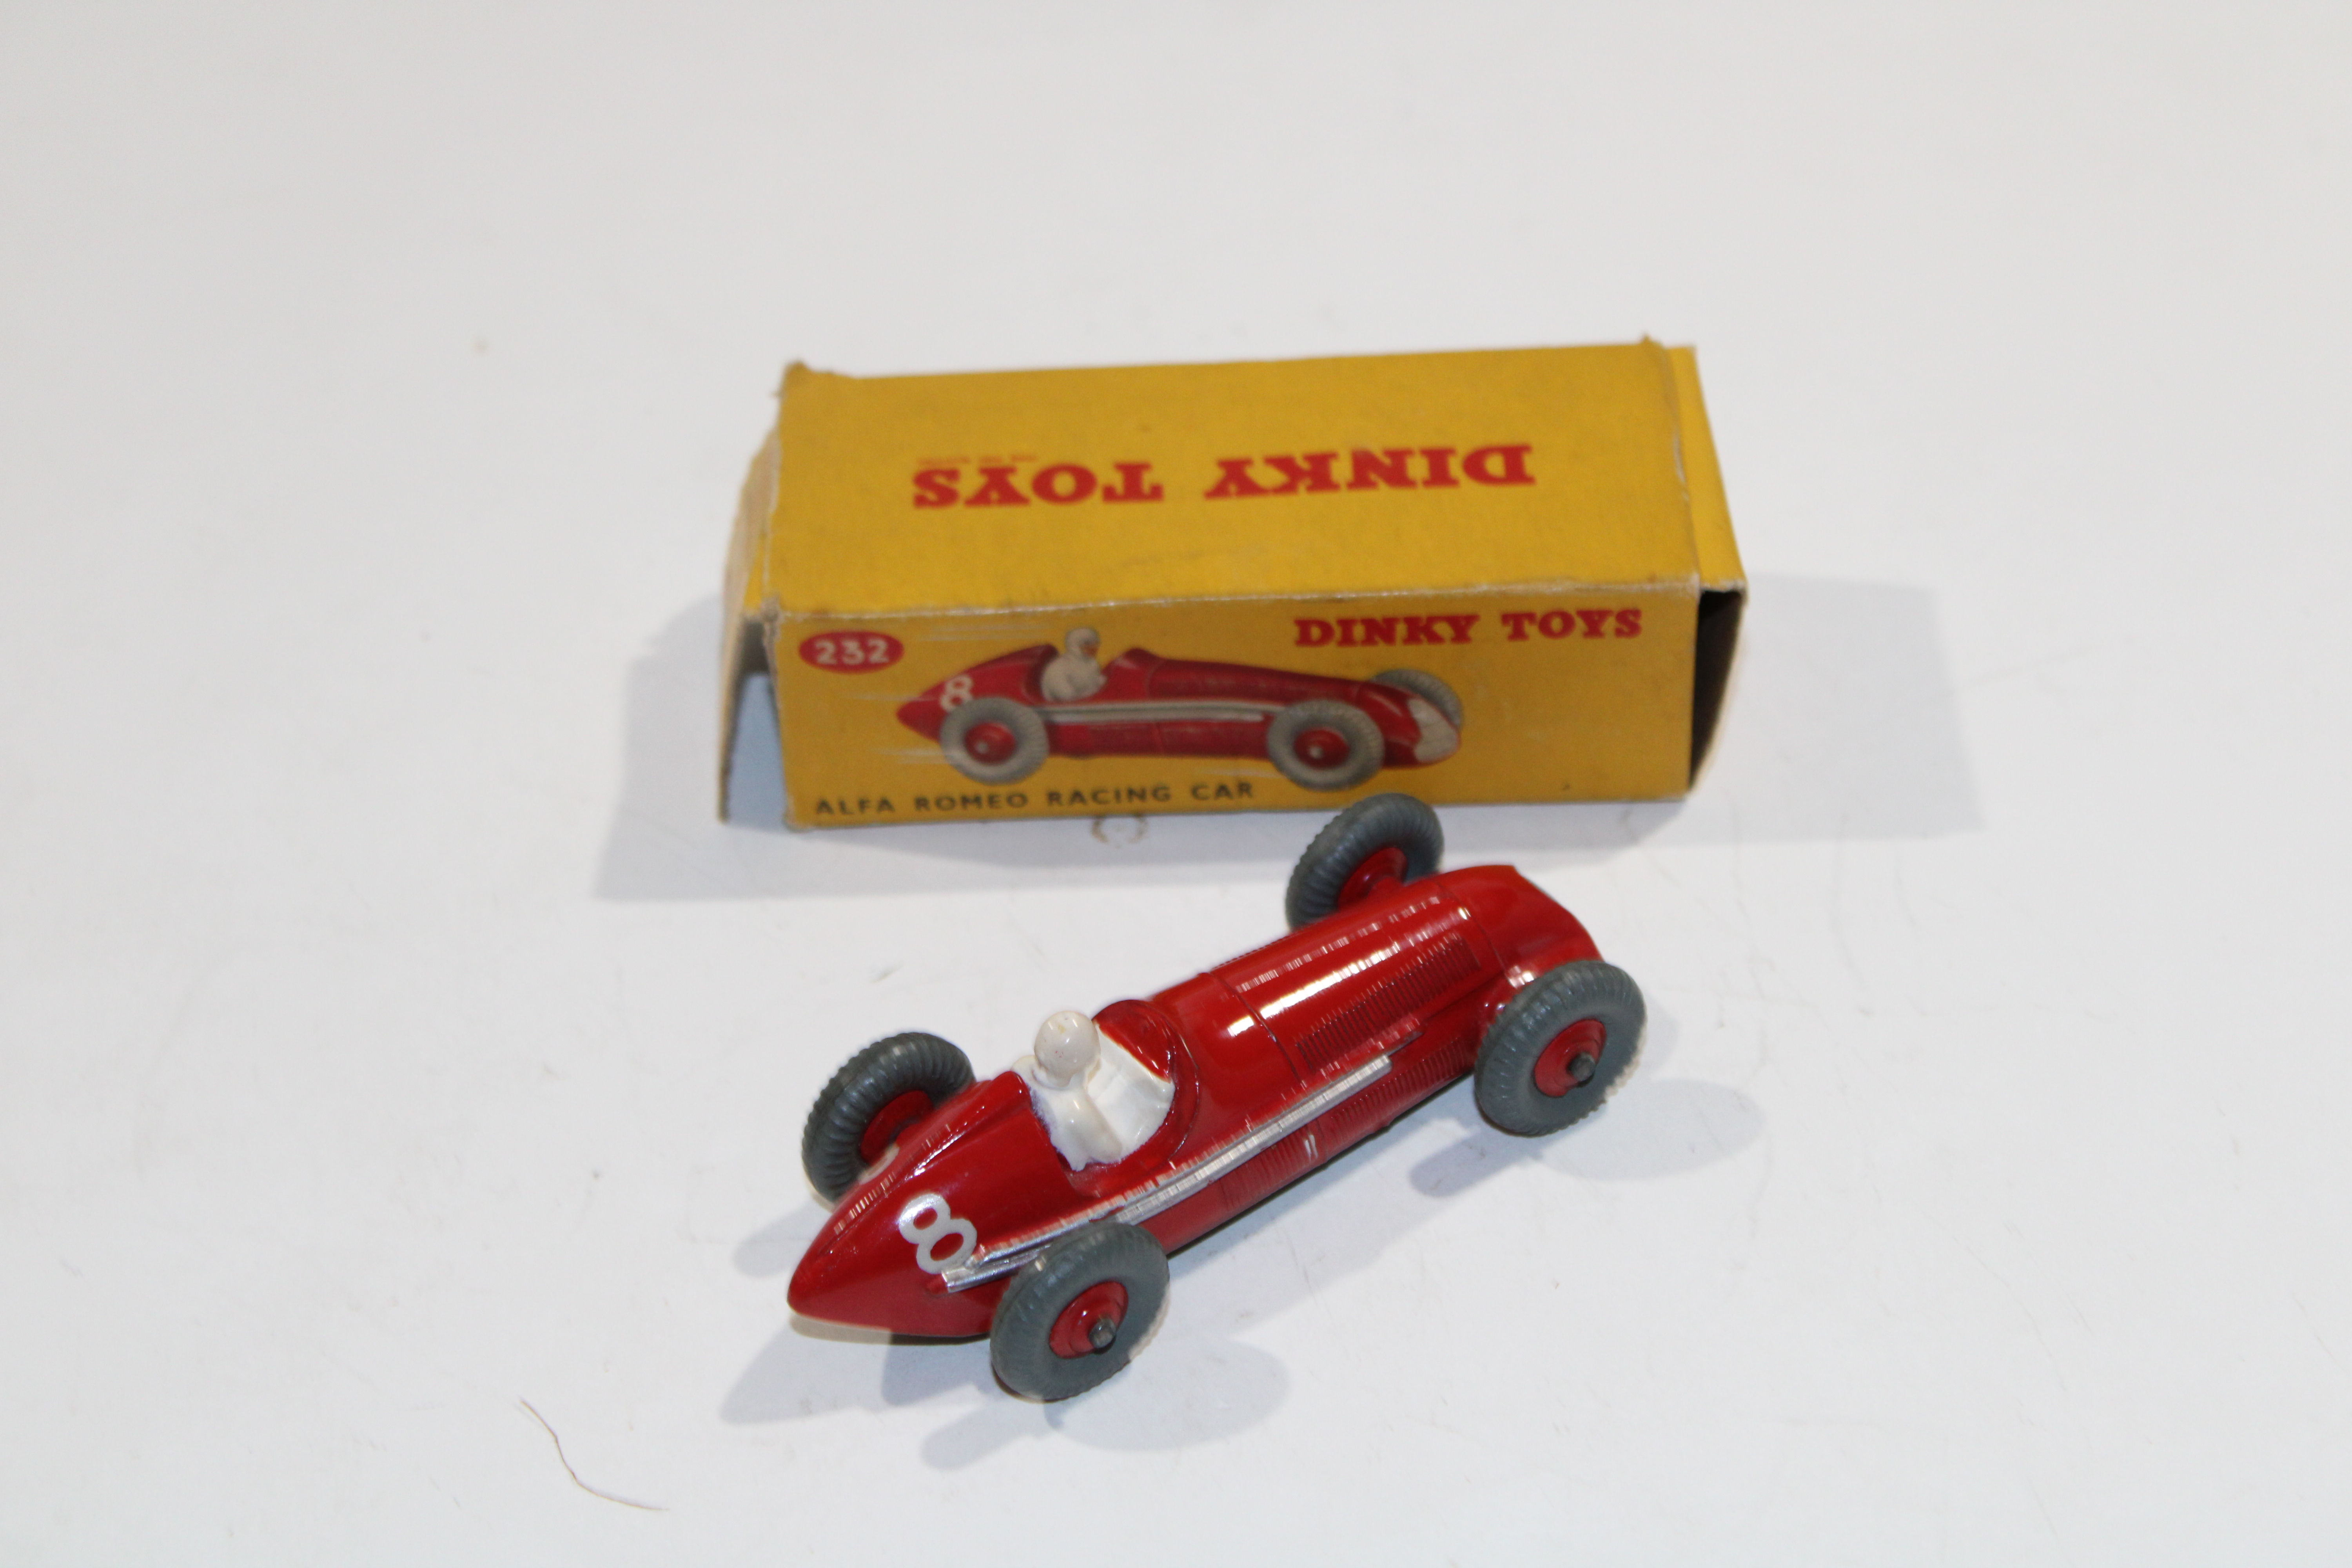 ALFA ROMEO RACING CAR DINKY TOYS 1955 1/43°